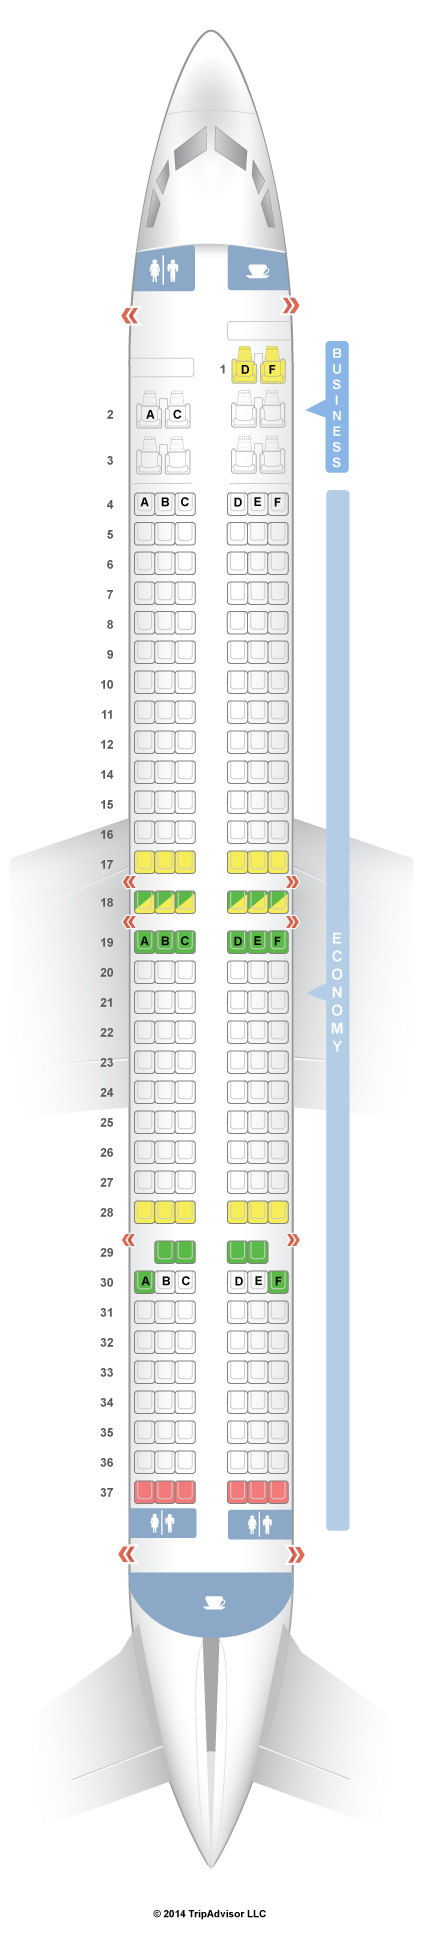 737 900 Aircraft Seating Chart